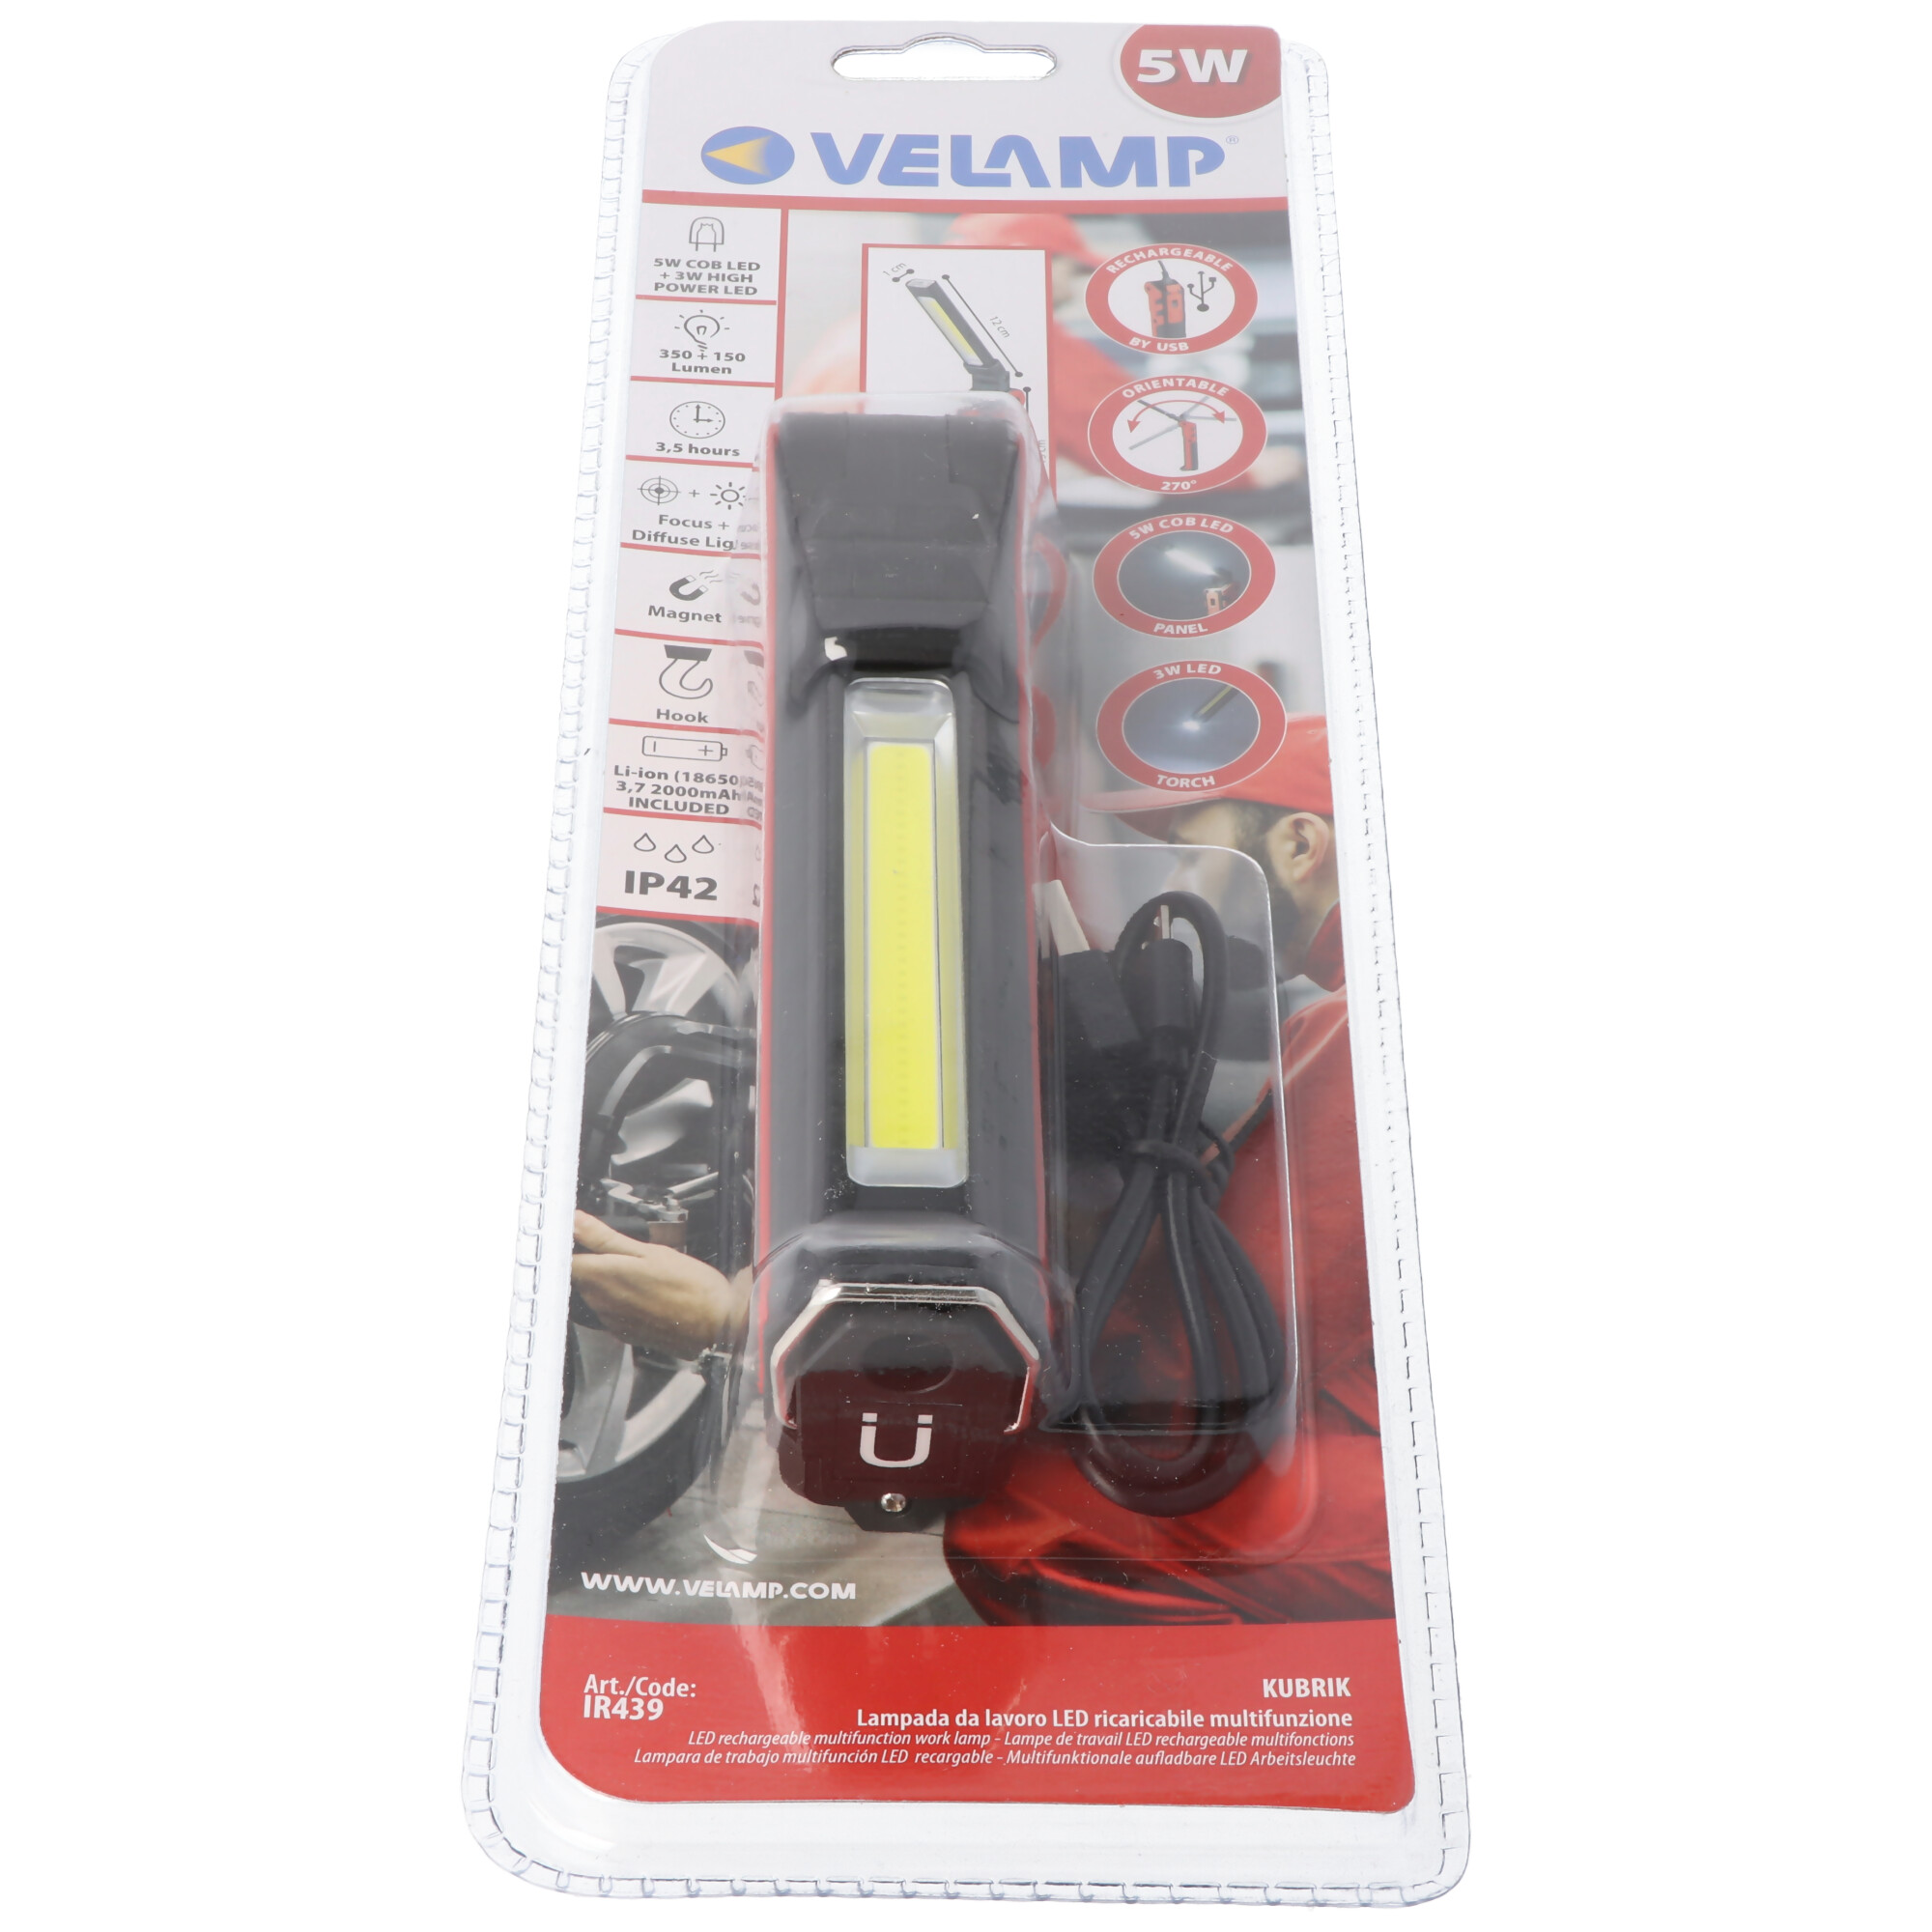 Velamp KUBRIK: Wiederaufladbare Multifunktions-Inspektionslampe + Taschenlampe.